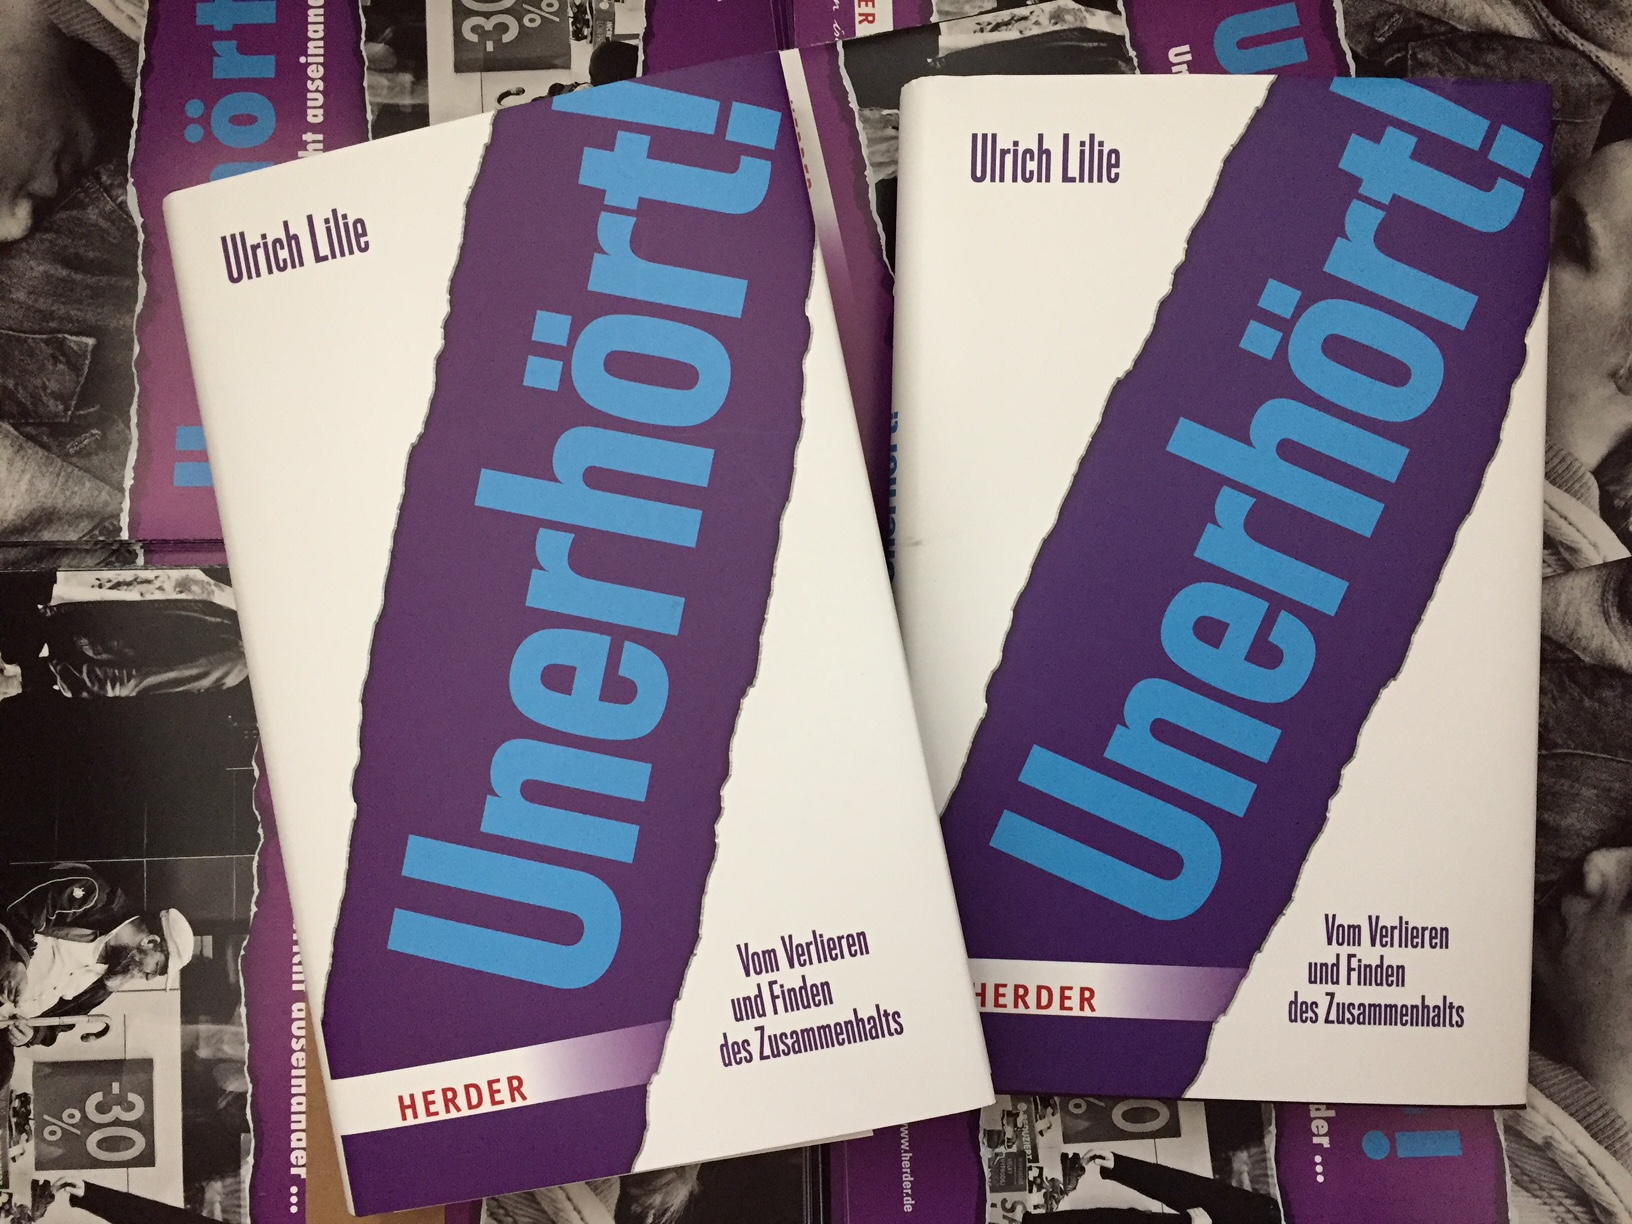 Zwei Exemplare des Buches "Unerhört!" von Ulrich Lilie